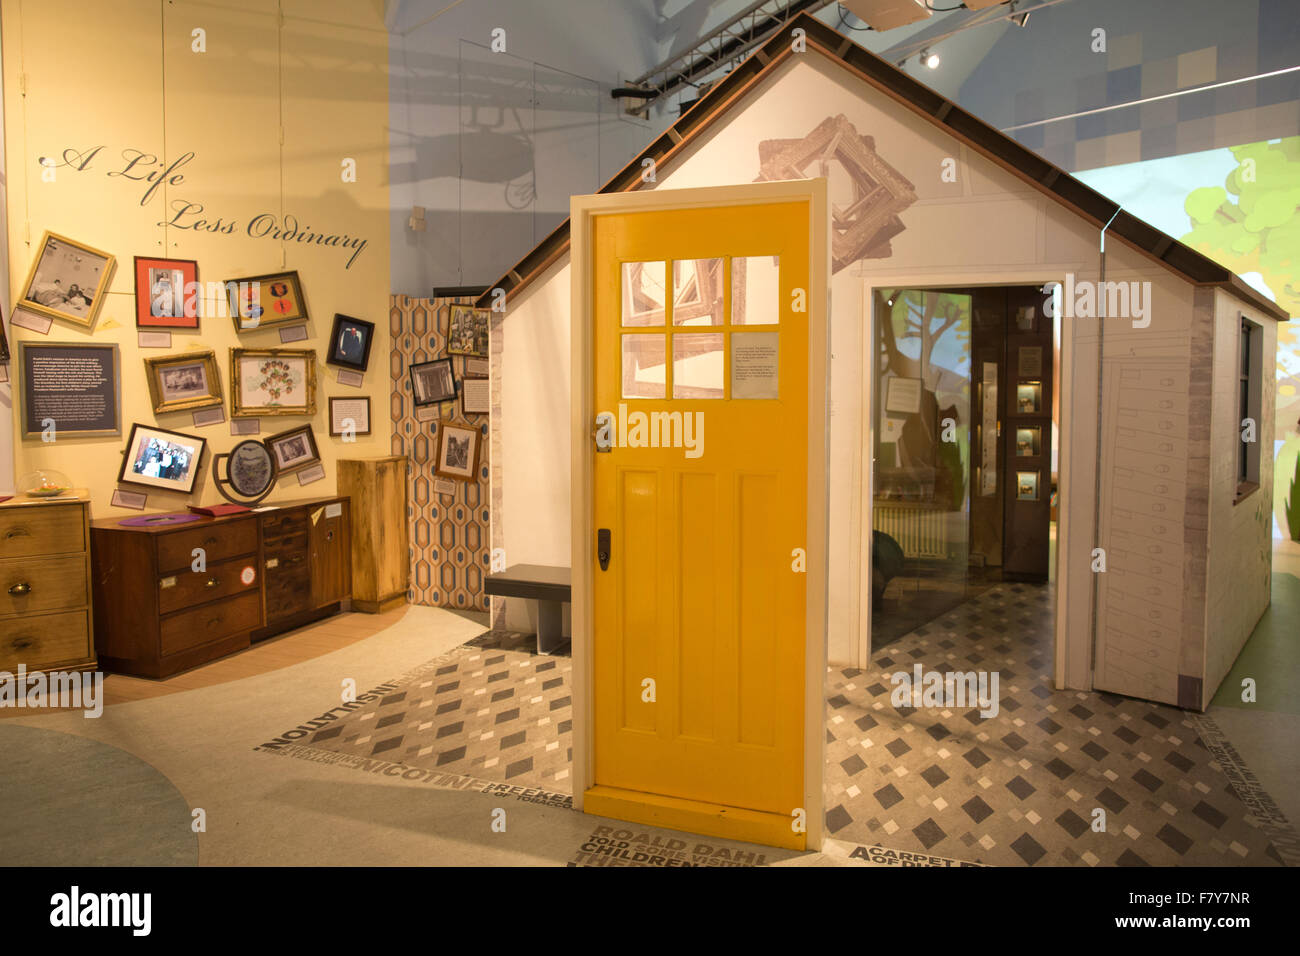 L'histoire de Roald Dahl Museum et centre, B-6986, Roald Dahl's reconstruit célèbre écrit Hut, UK Banque D'Images